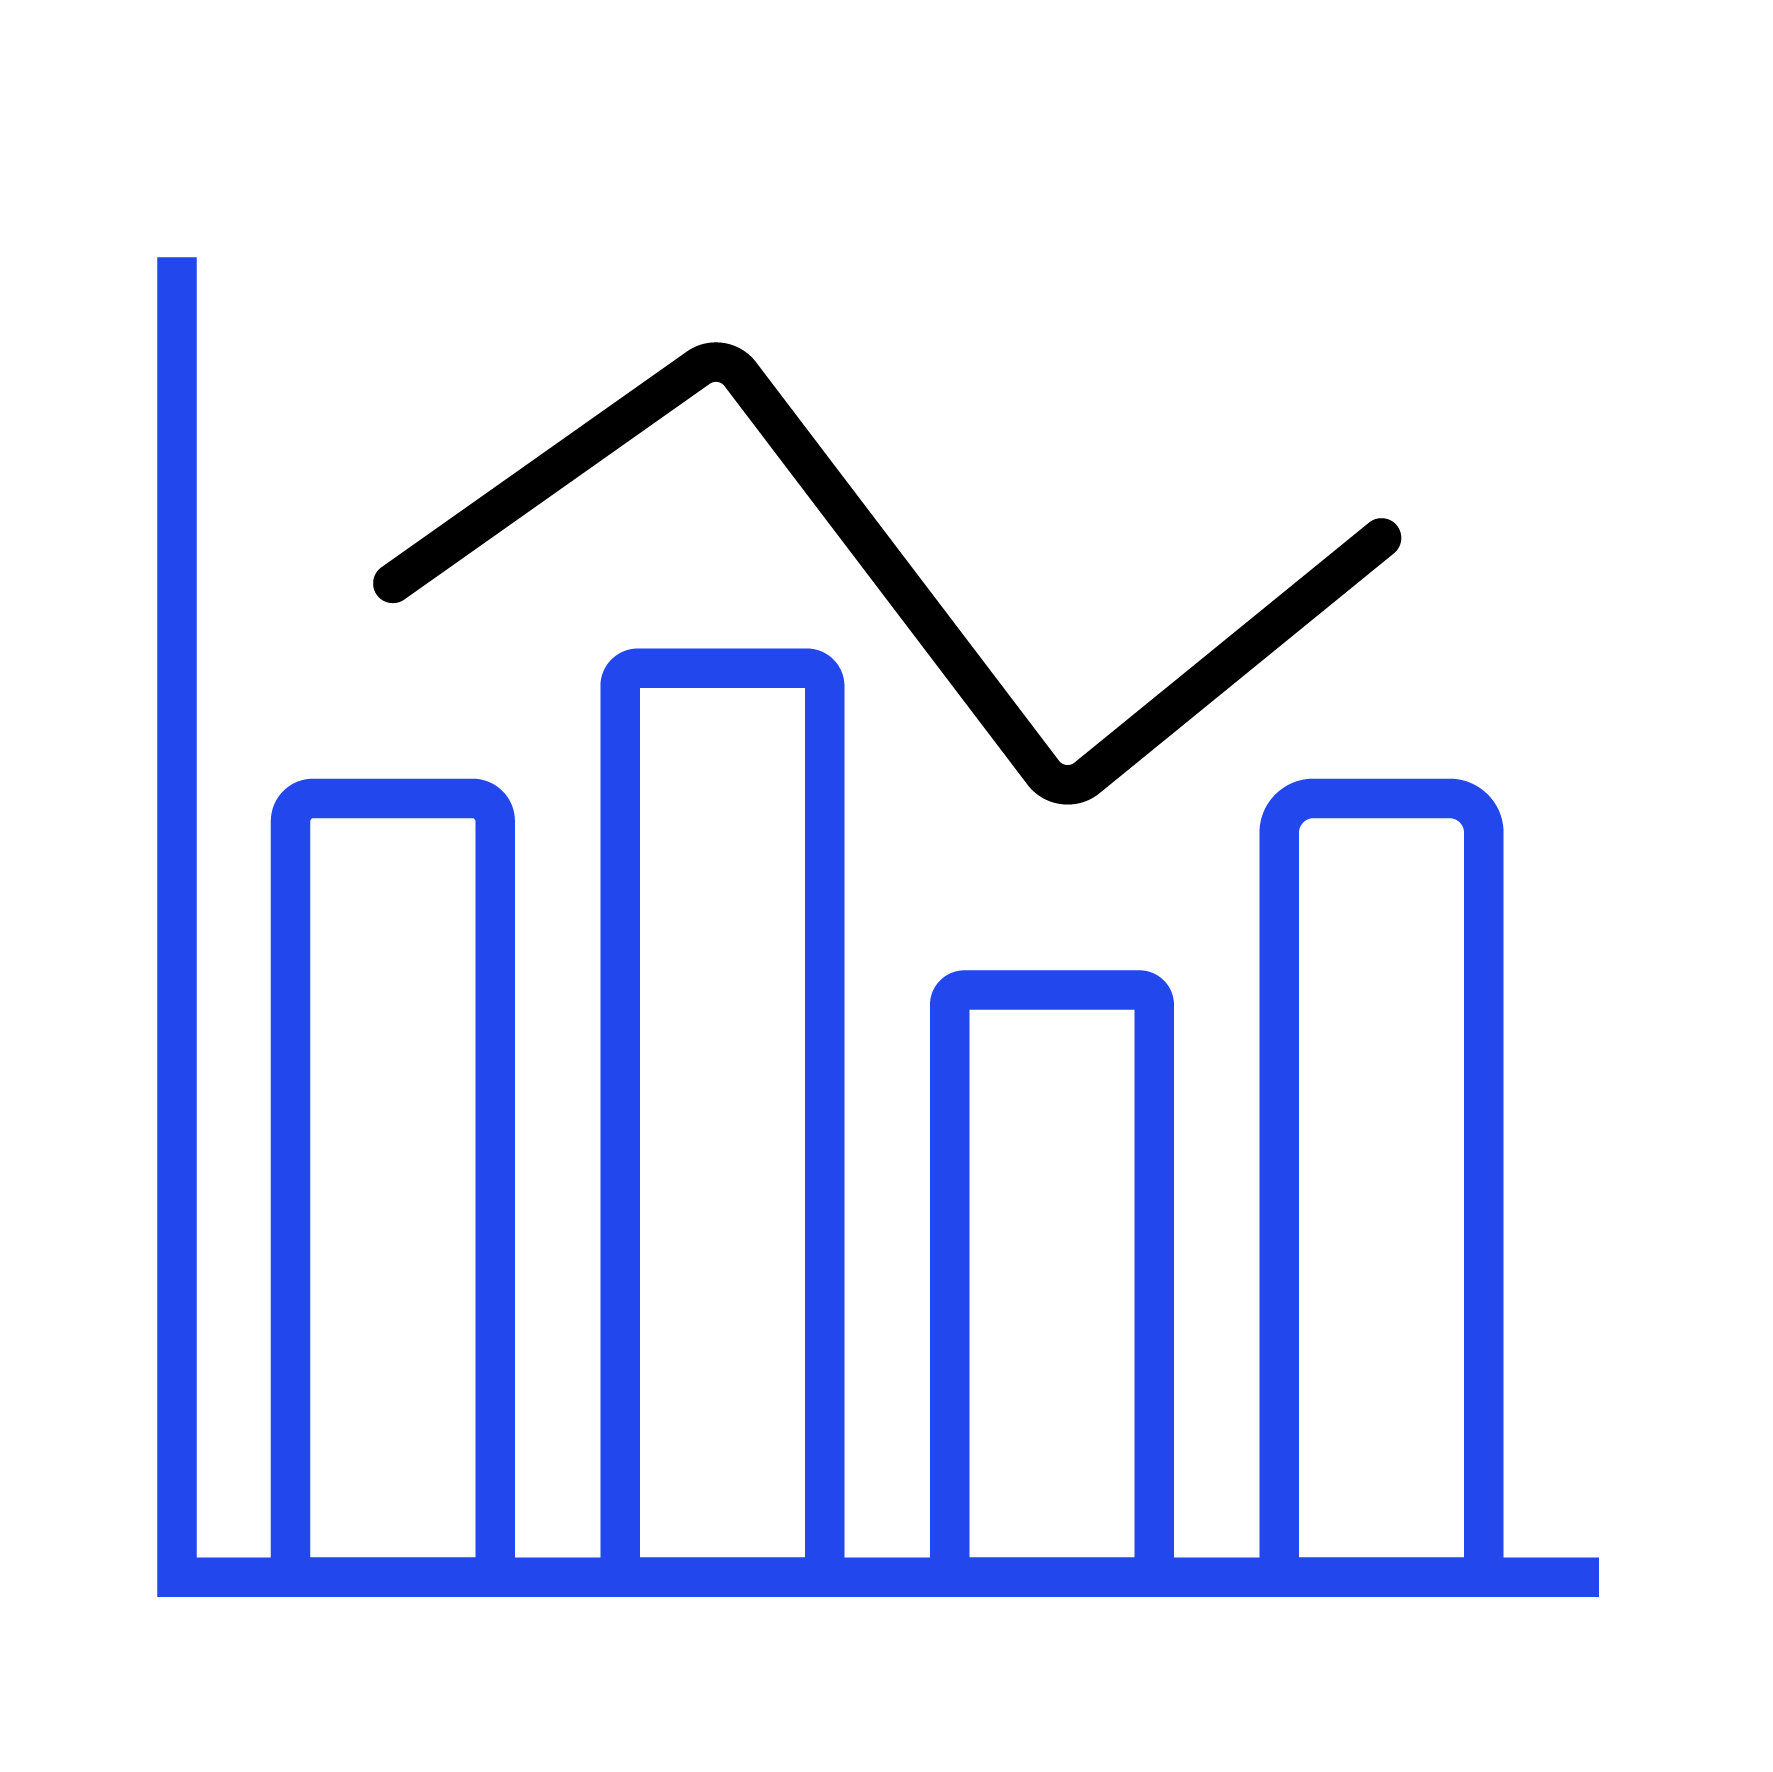 Bar graph icon illustration